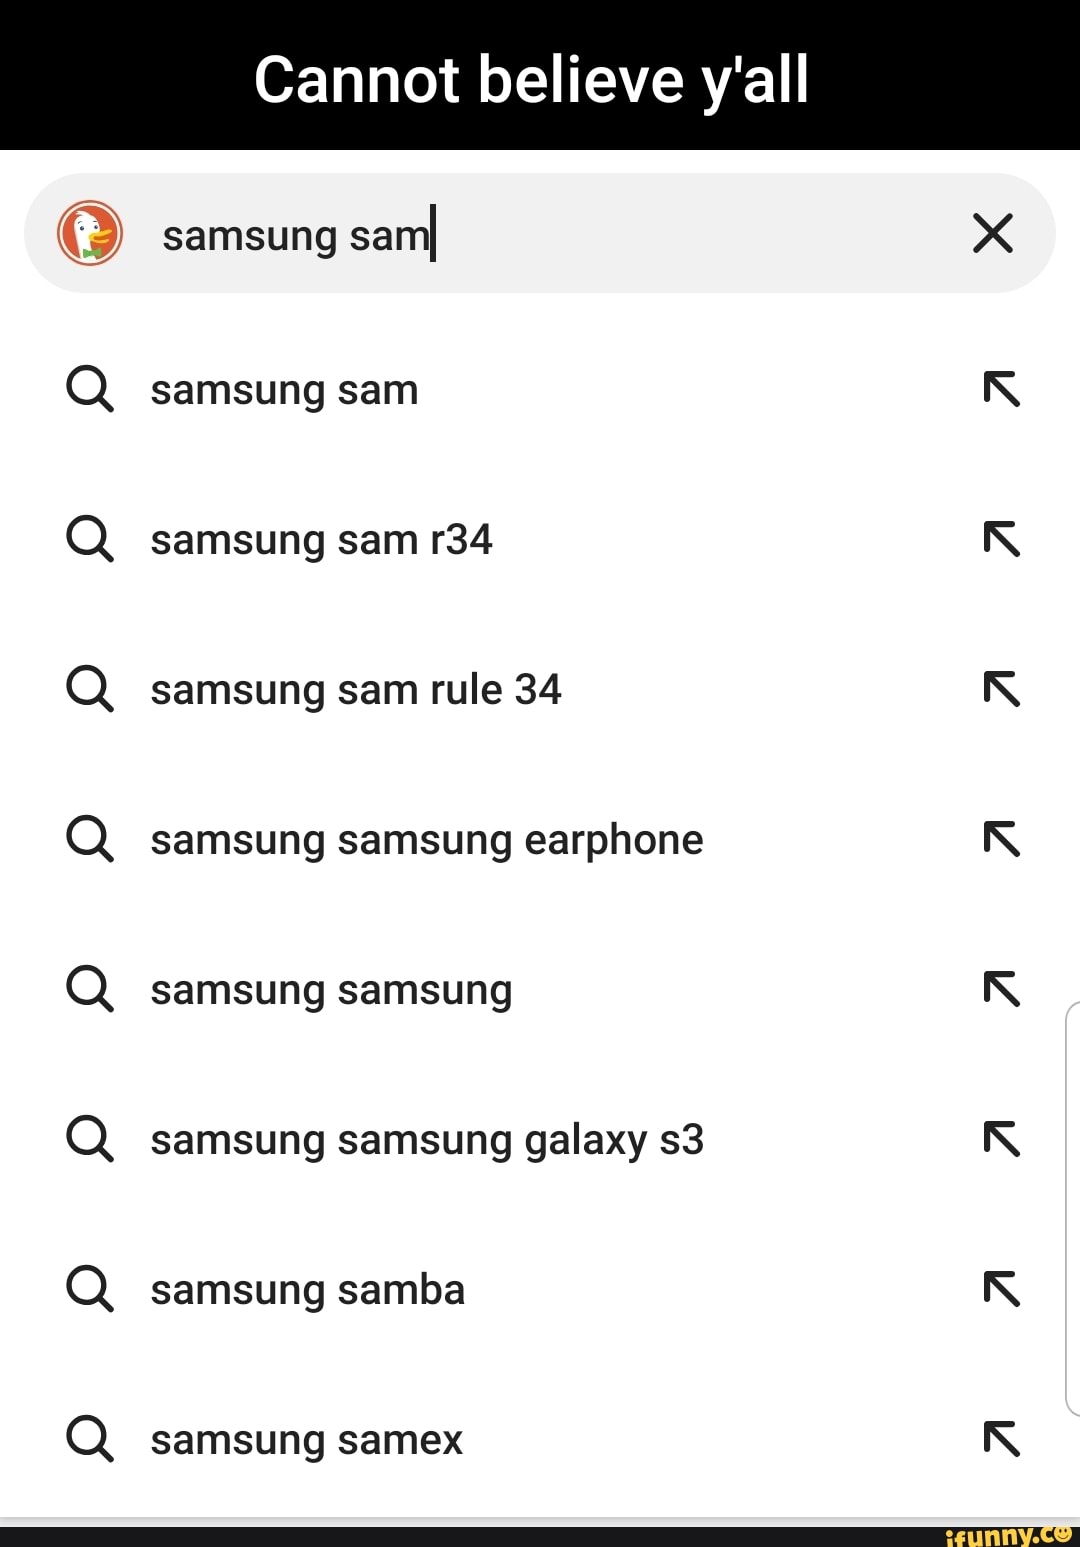 Sam, from Samsung, Samsung Sam